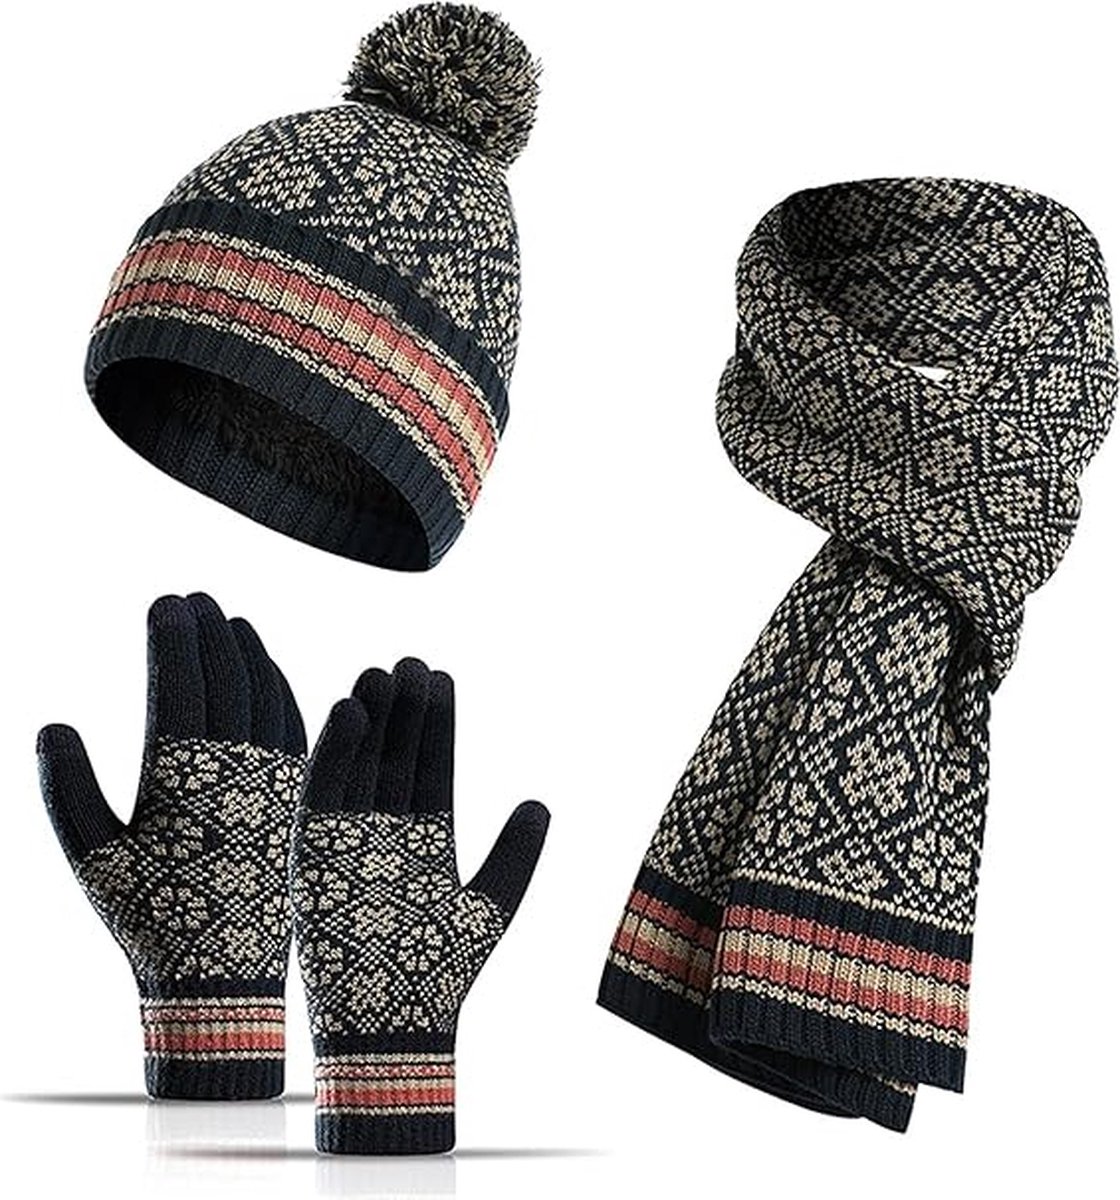 SHOP YOLO- Muts Heren -Winter Muts Sjaal -Touchscreen Handschoenen Set 3 Stuks Zachte Warme Gebreide Beanie